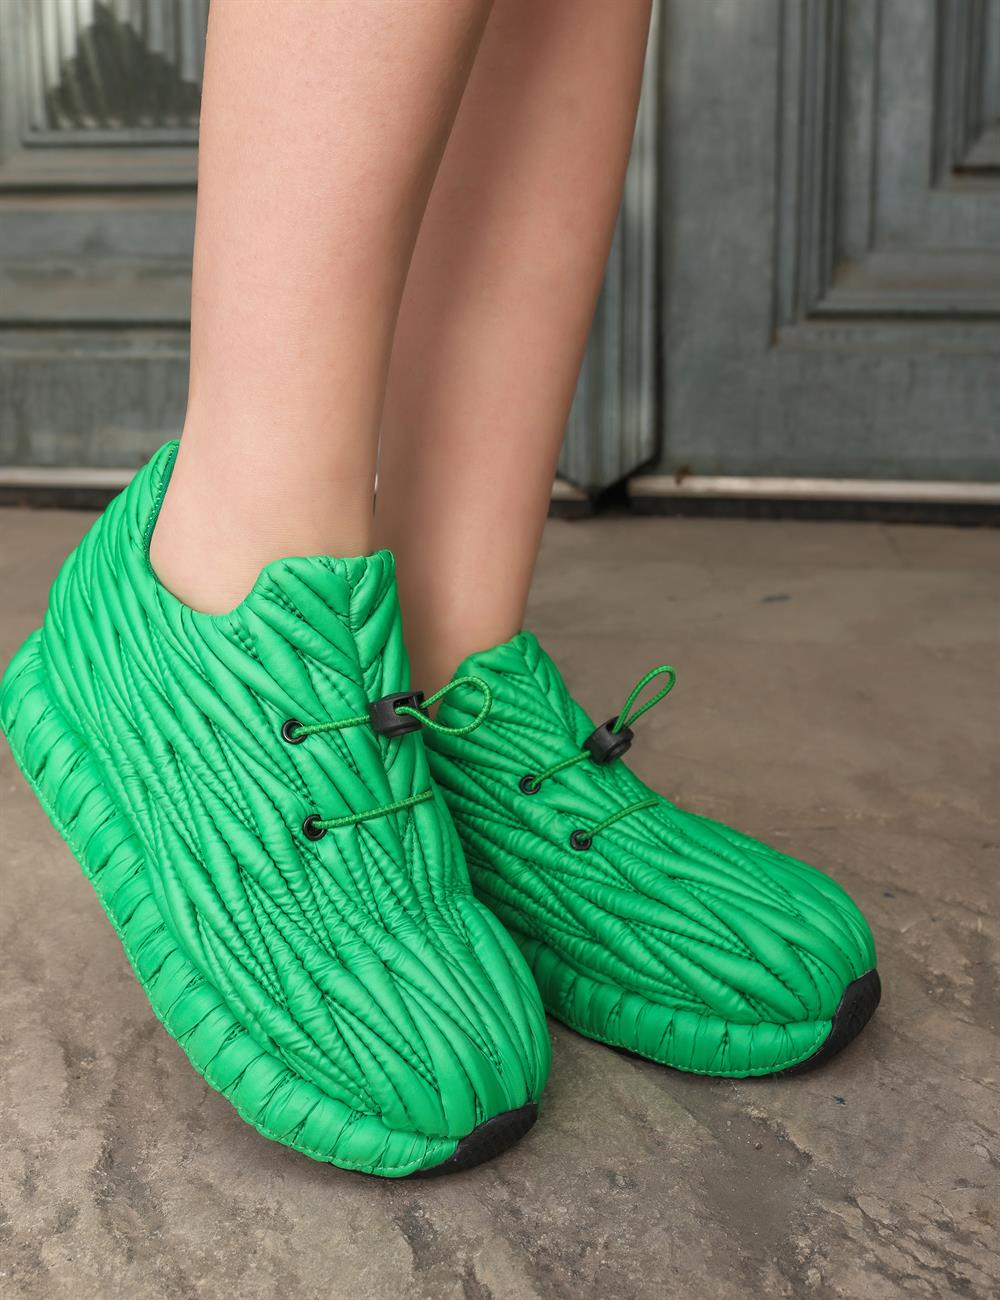 Huxley Spor Ayakkabı Yeşil - KADIN AYAKKABI